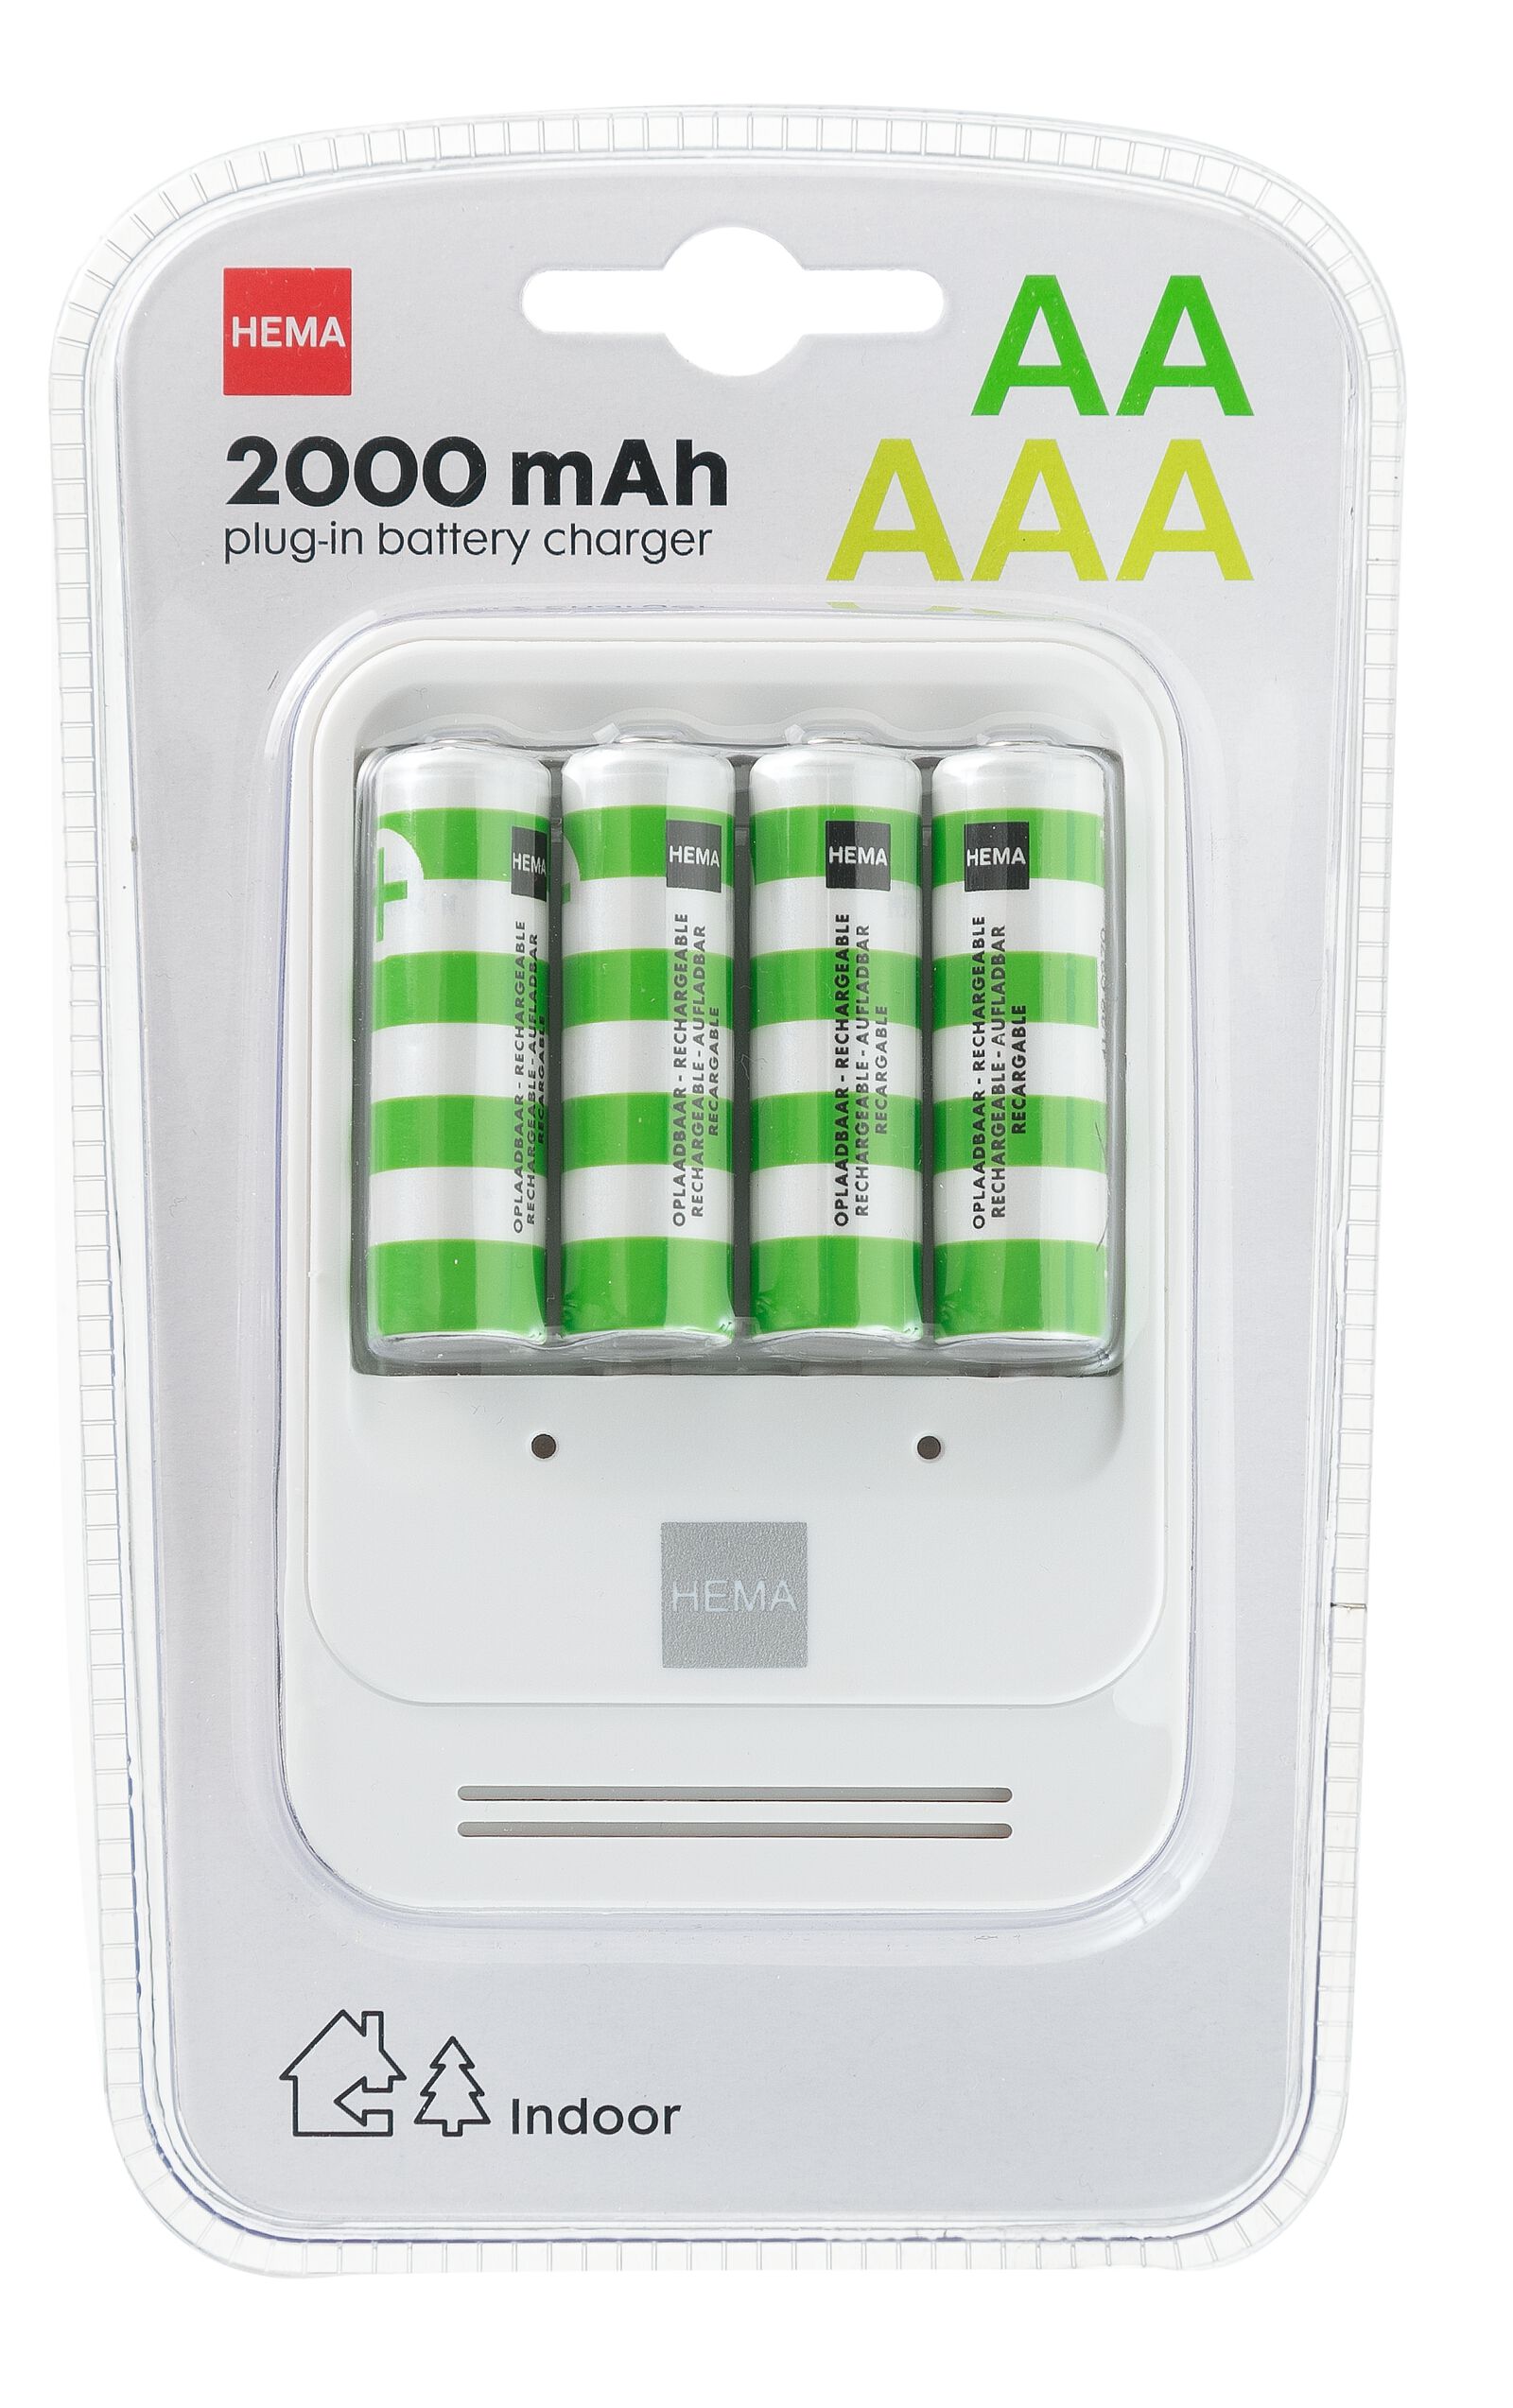 chargeur de batterie avec 4 piles AA comprises - HEMA